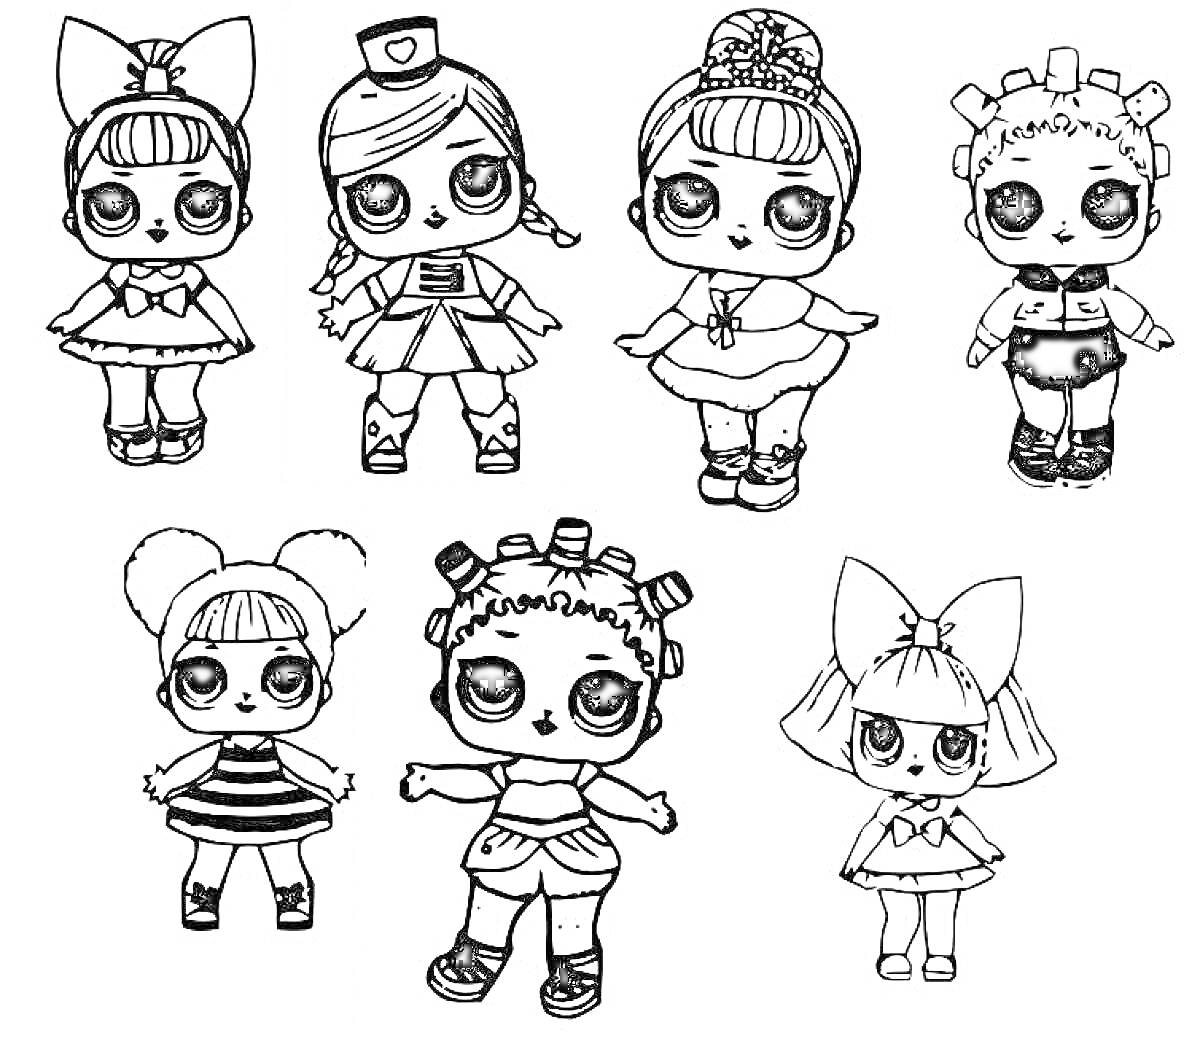 Раскраска Семь кукол LOL в различных нарядах с большими глазами